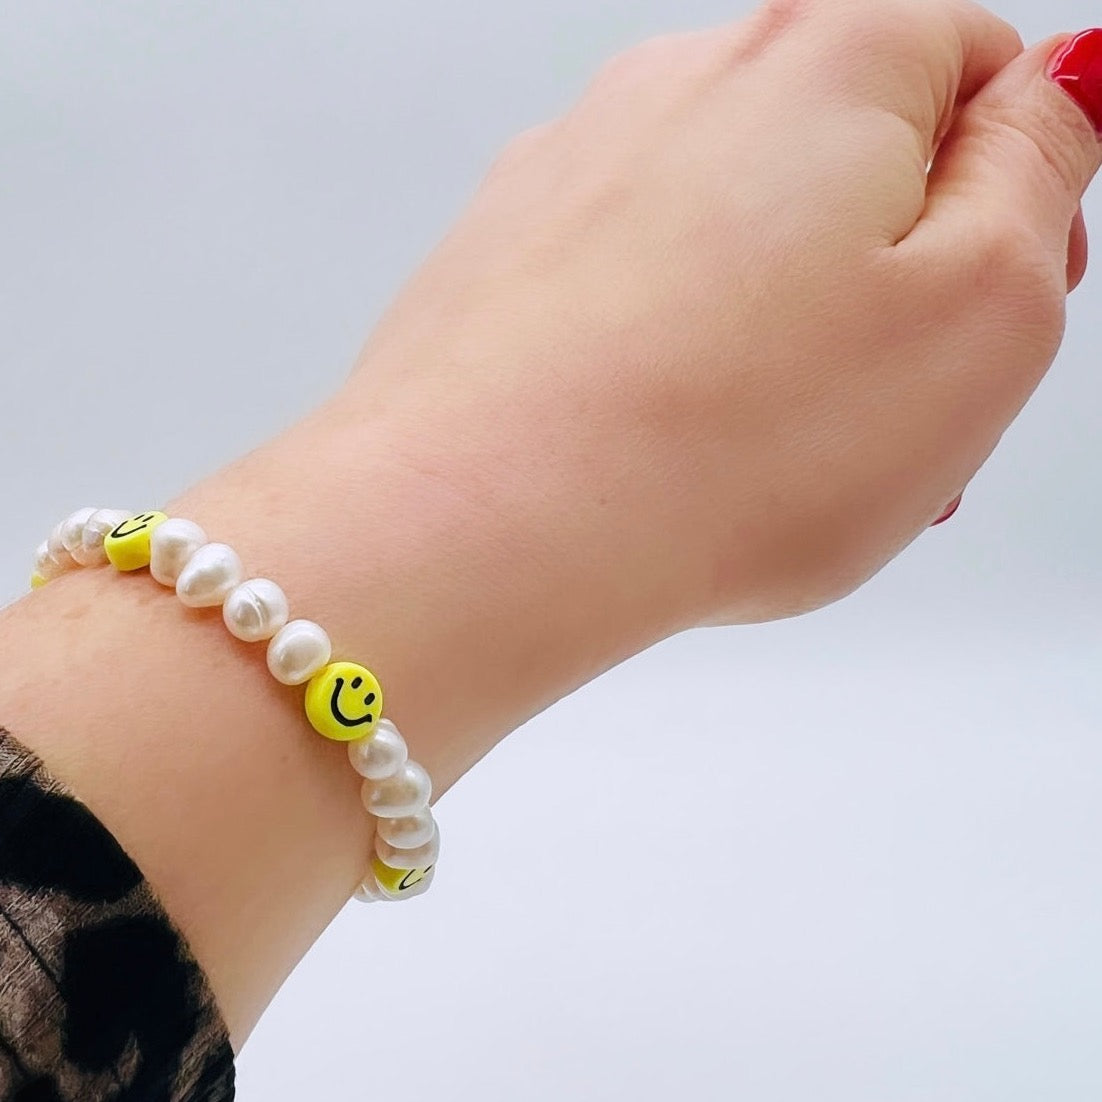 Armband aus Süsswasserperlen mit gelben Smileys